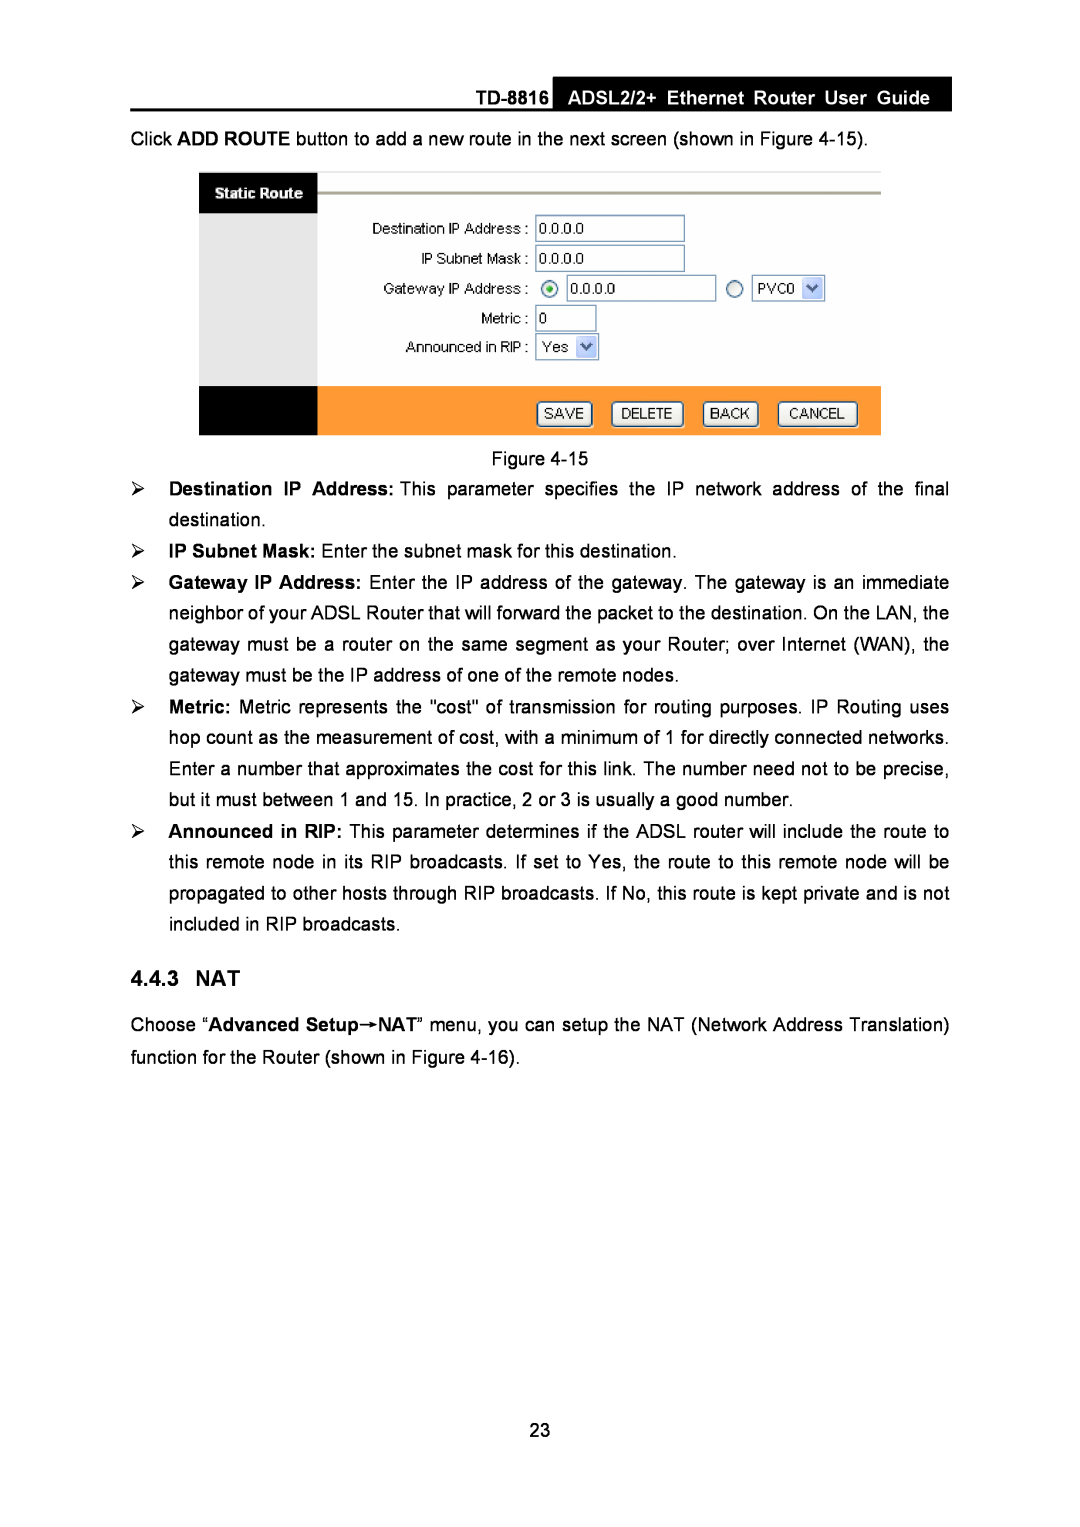 TP-Link TD-8816 manual 4.4.3 NAT, ADSL2/2+ Ethernet Router User Guide 